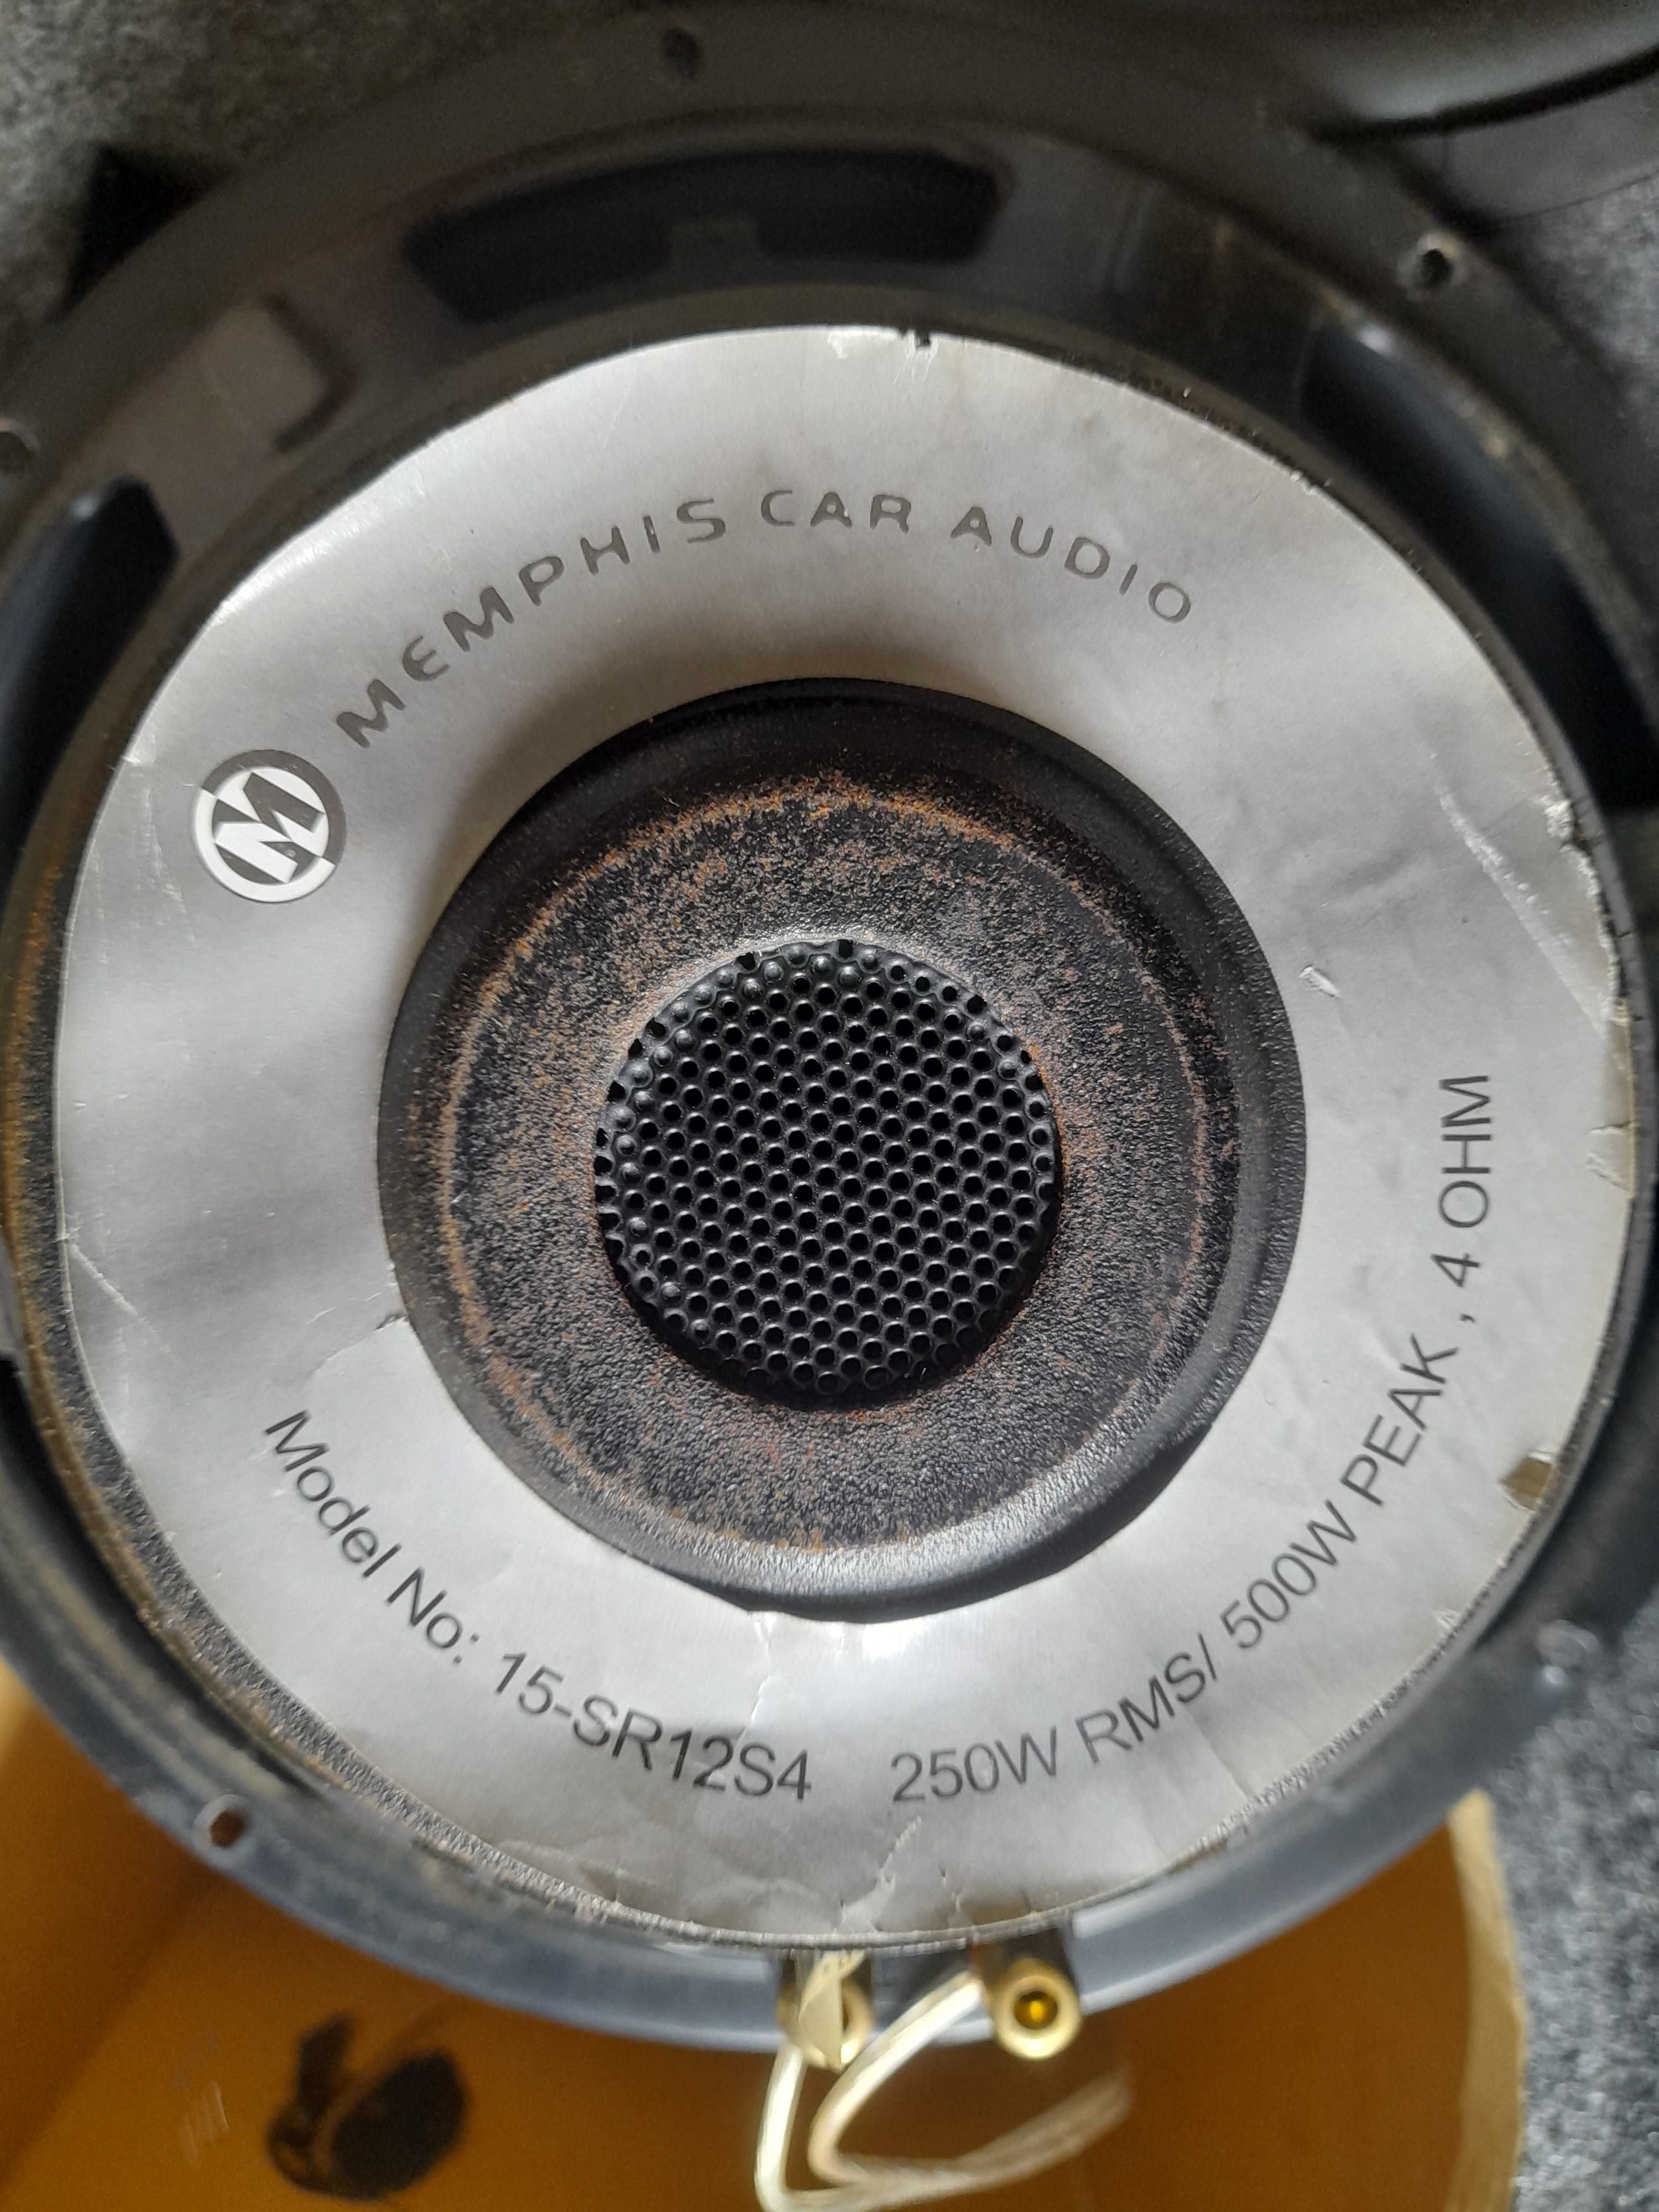 Subwoofer, głośniki Memphis car audio model 15-SR12S4